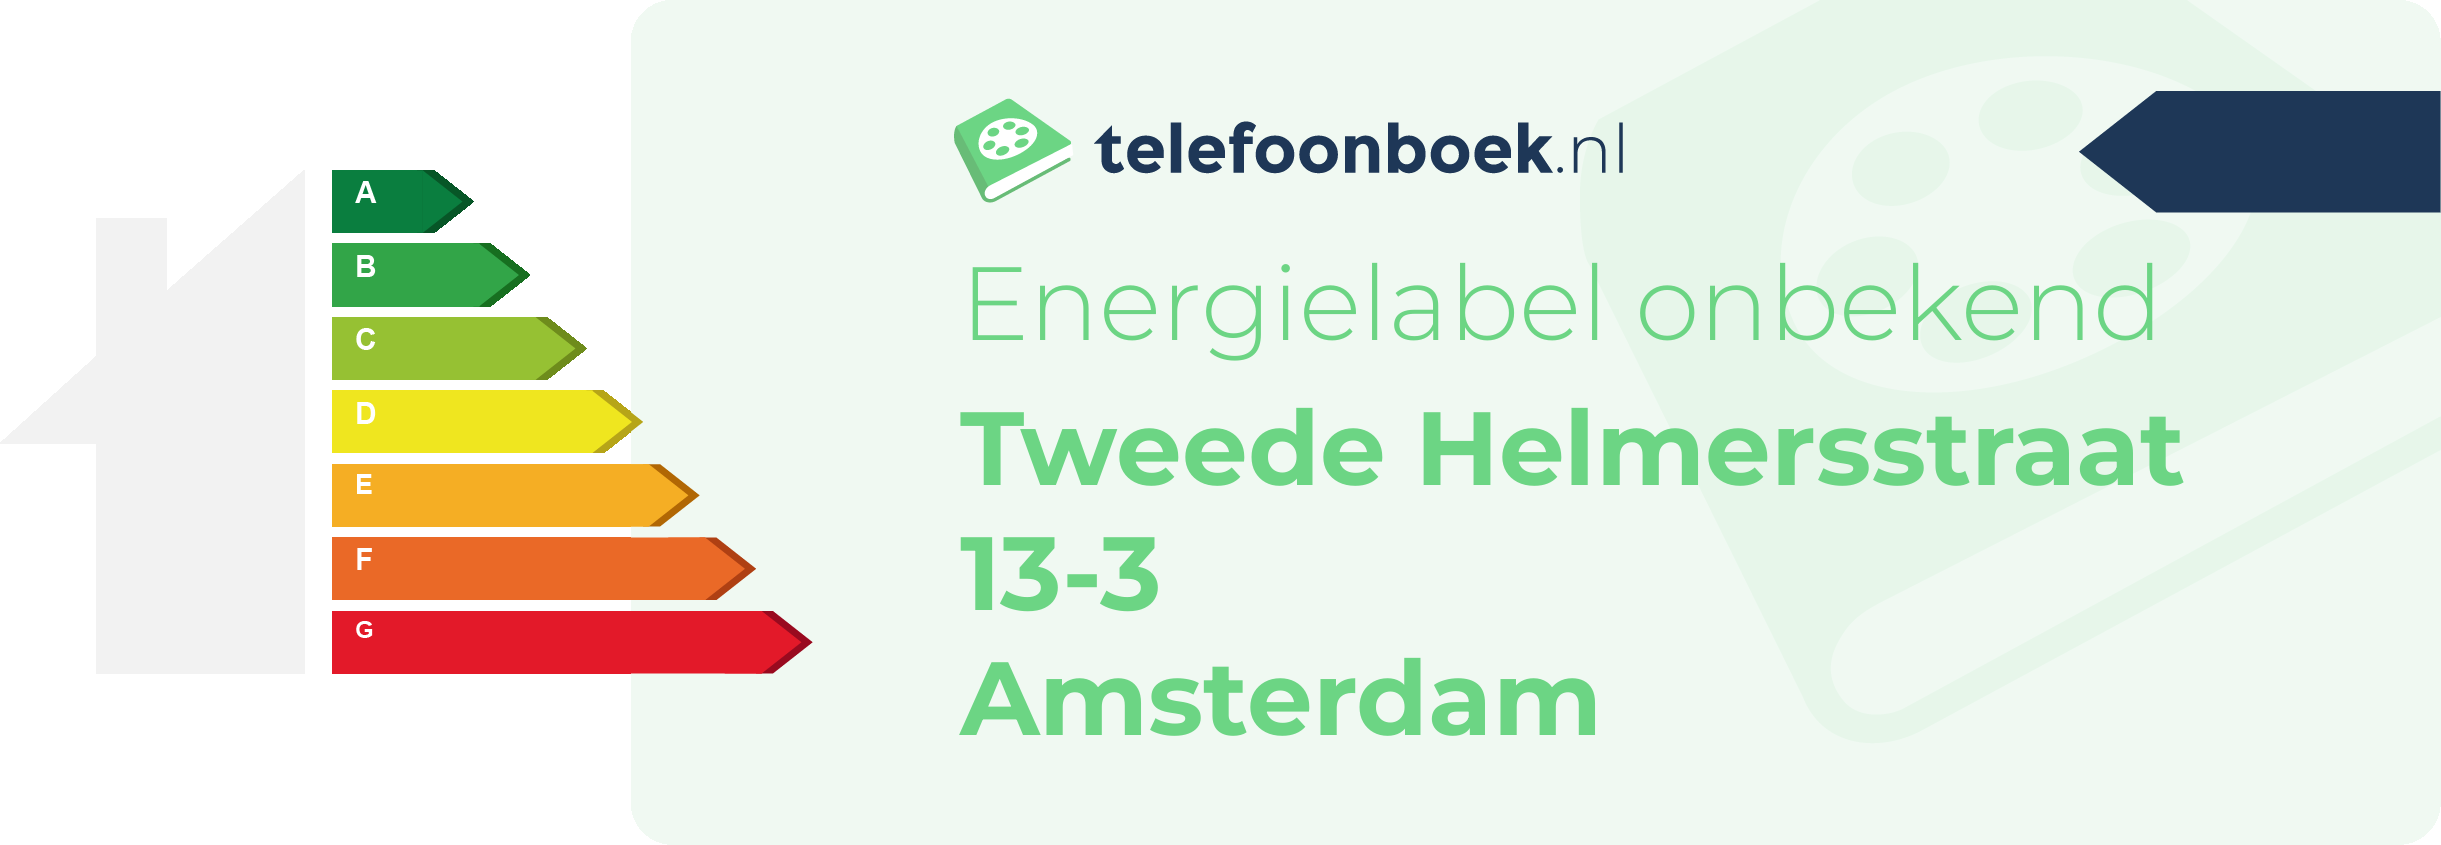 Energielabel Tweede Helmersstraat 13-3 Amsterdam